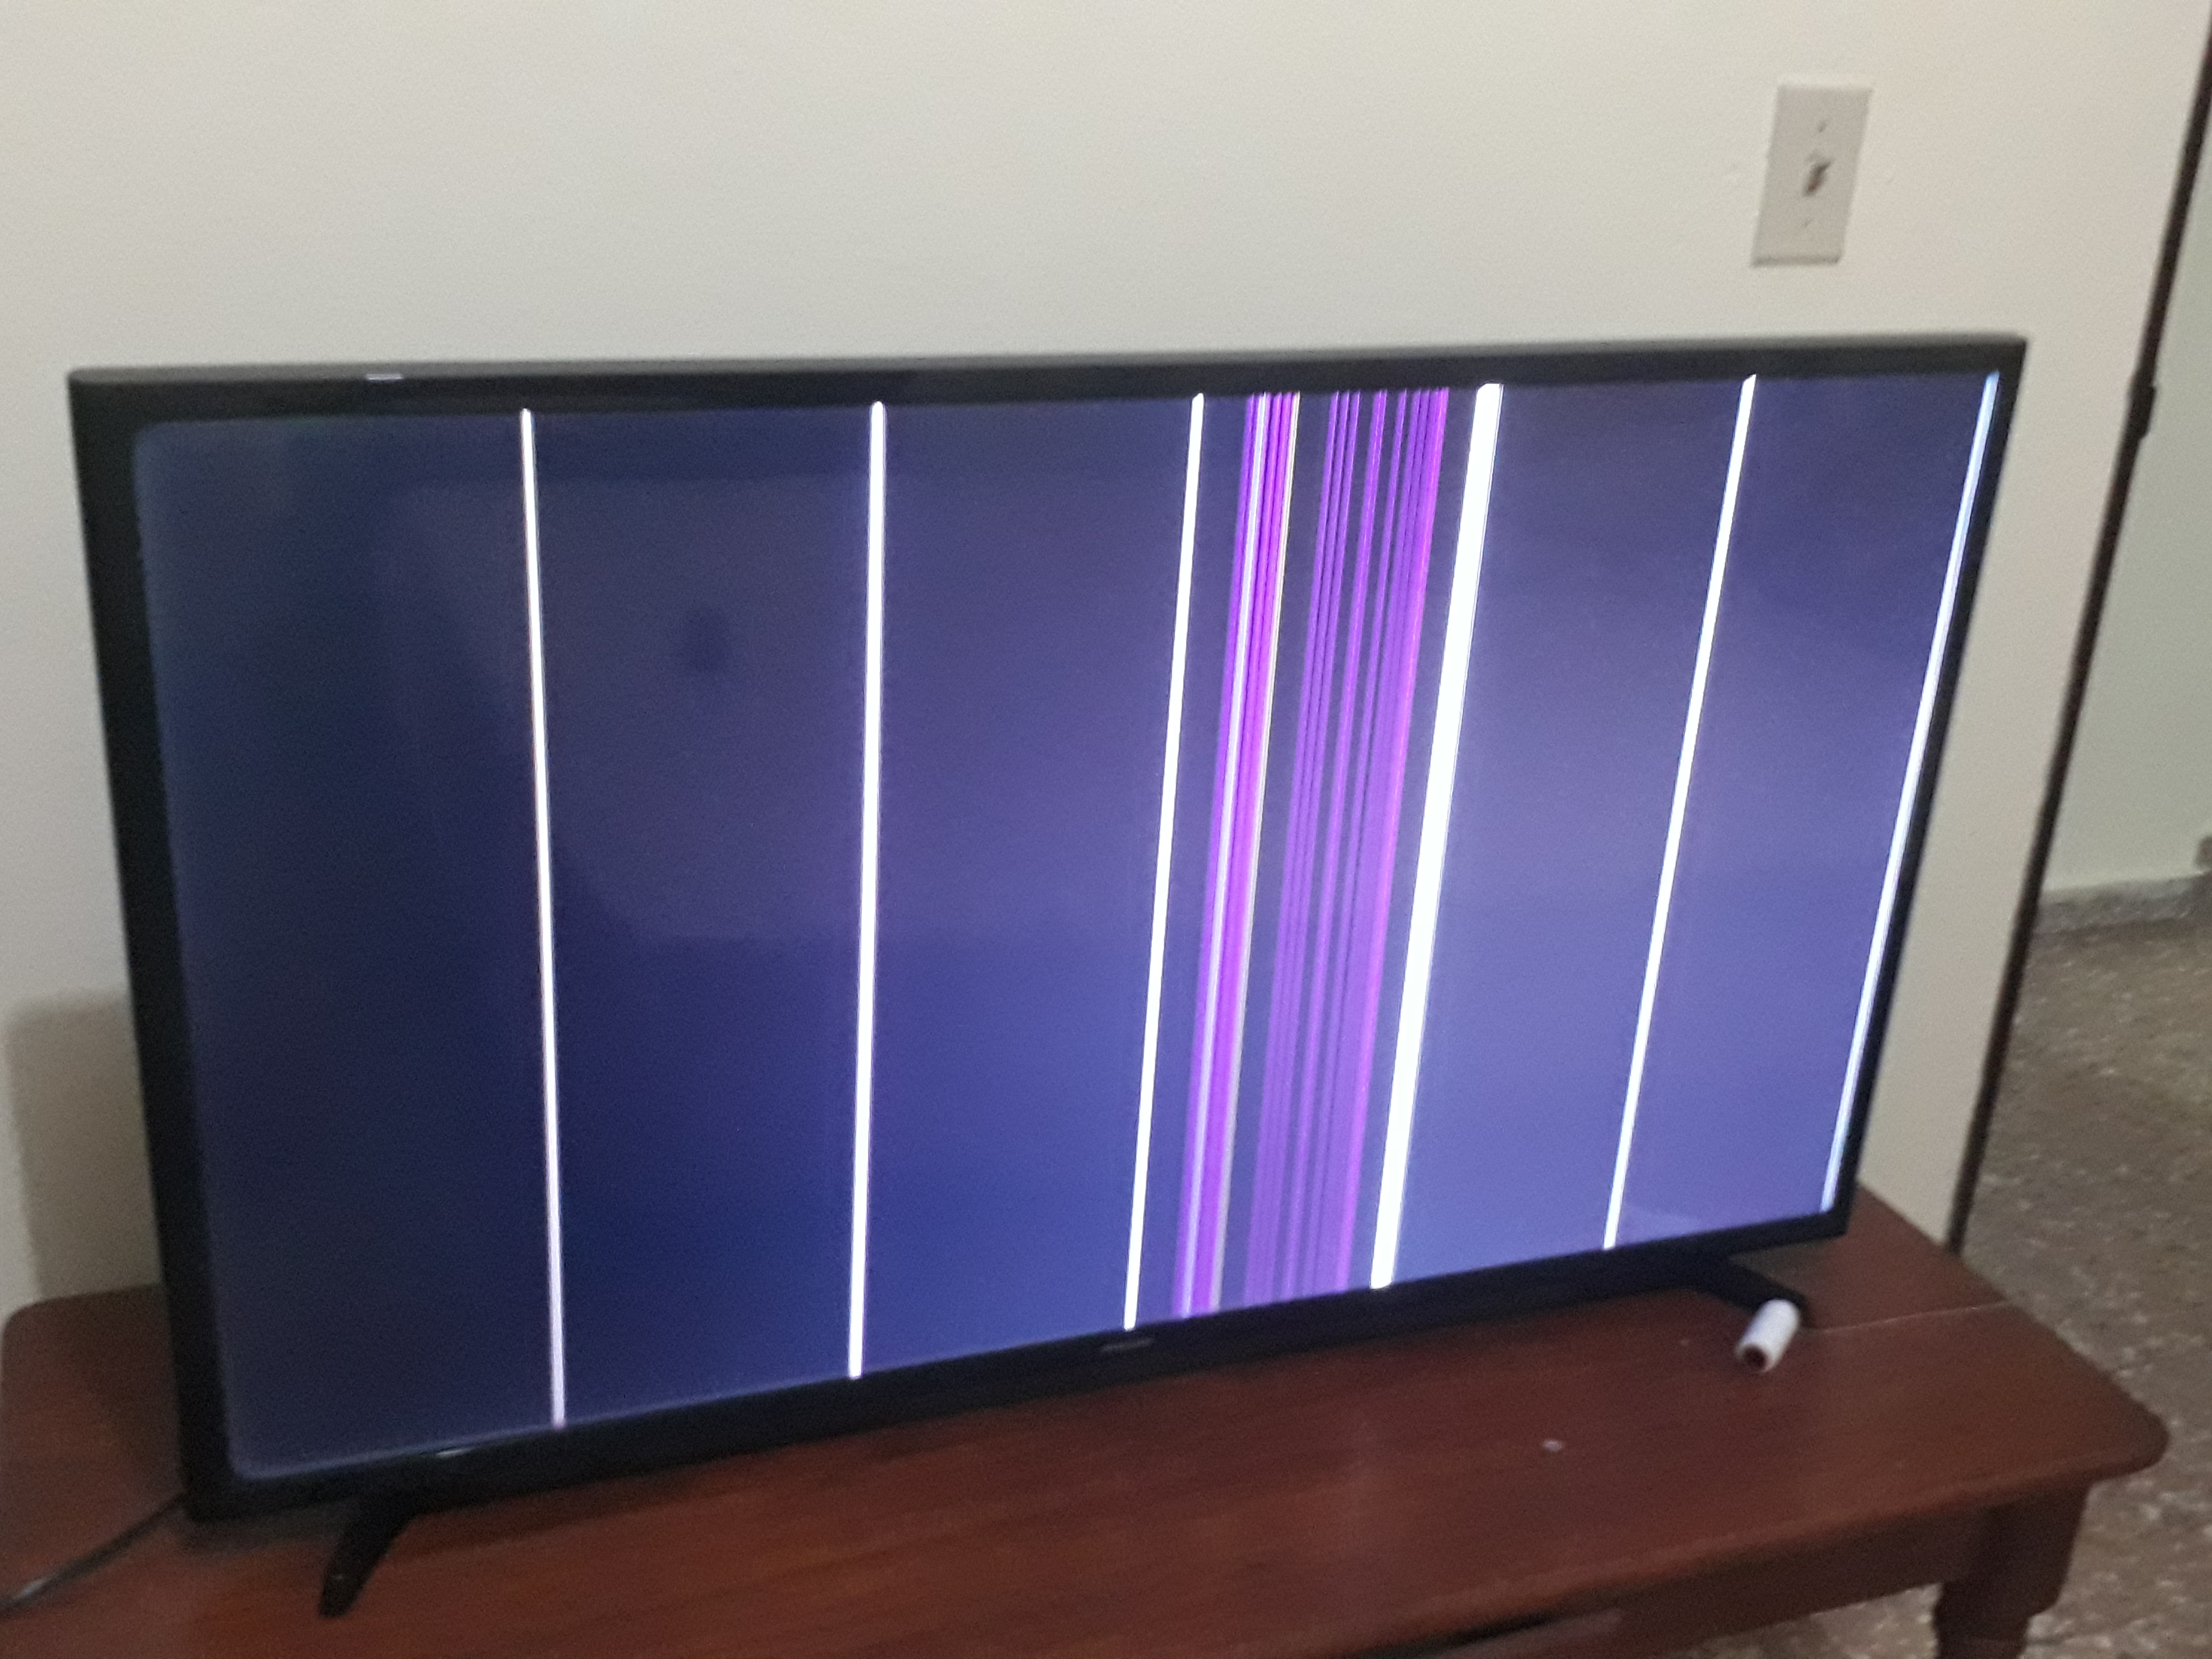 Solucionado: TV se apaga y enciende sola - Samsung Community